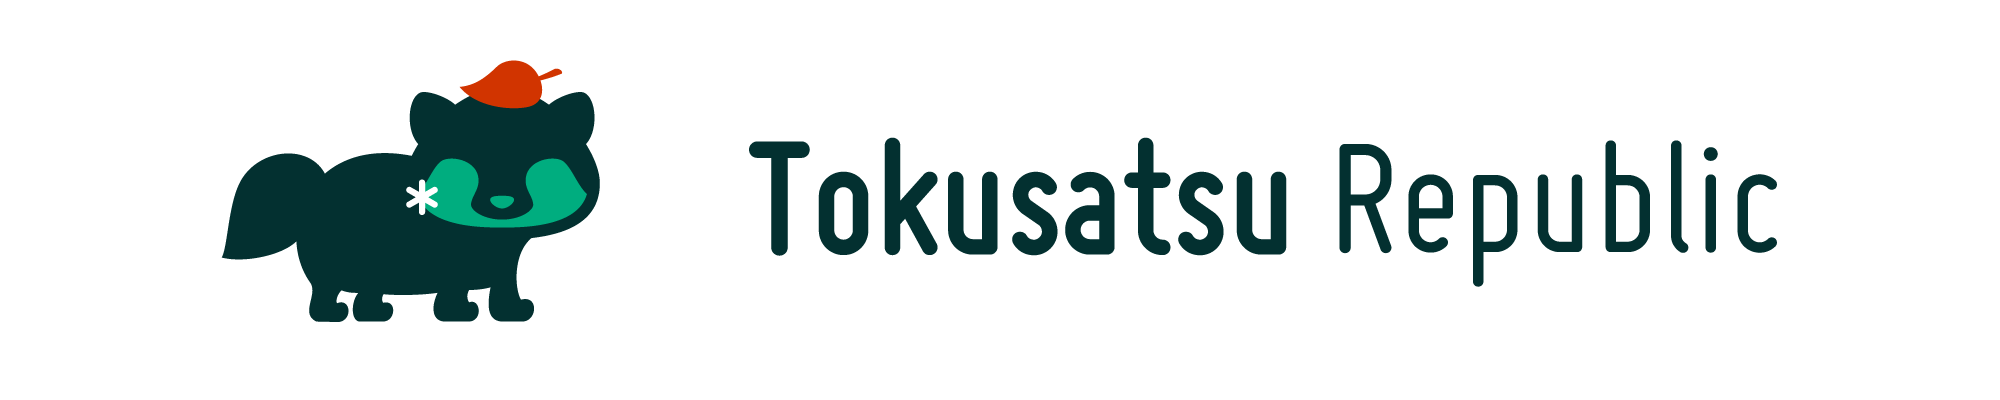 Tokusatsu Republic